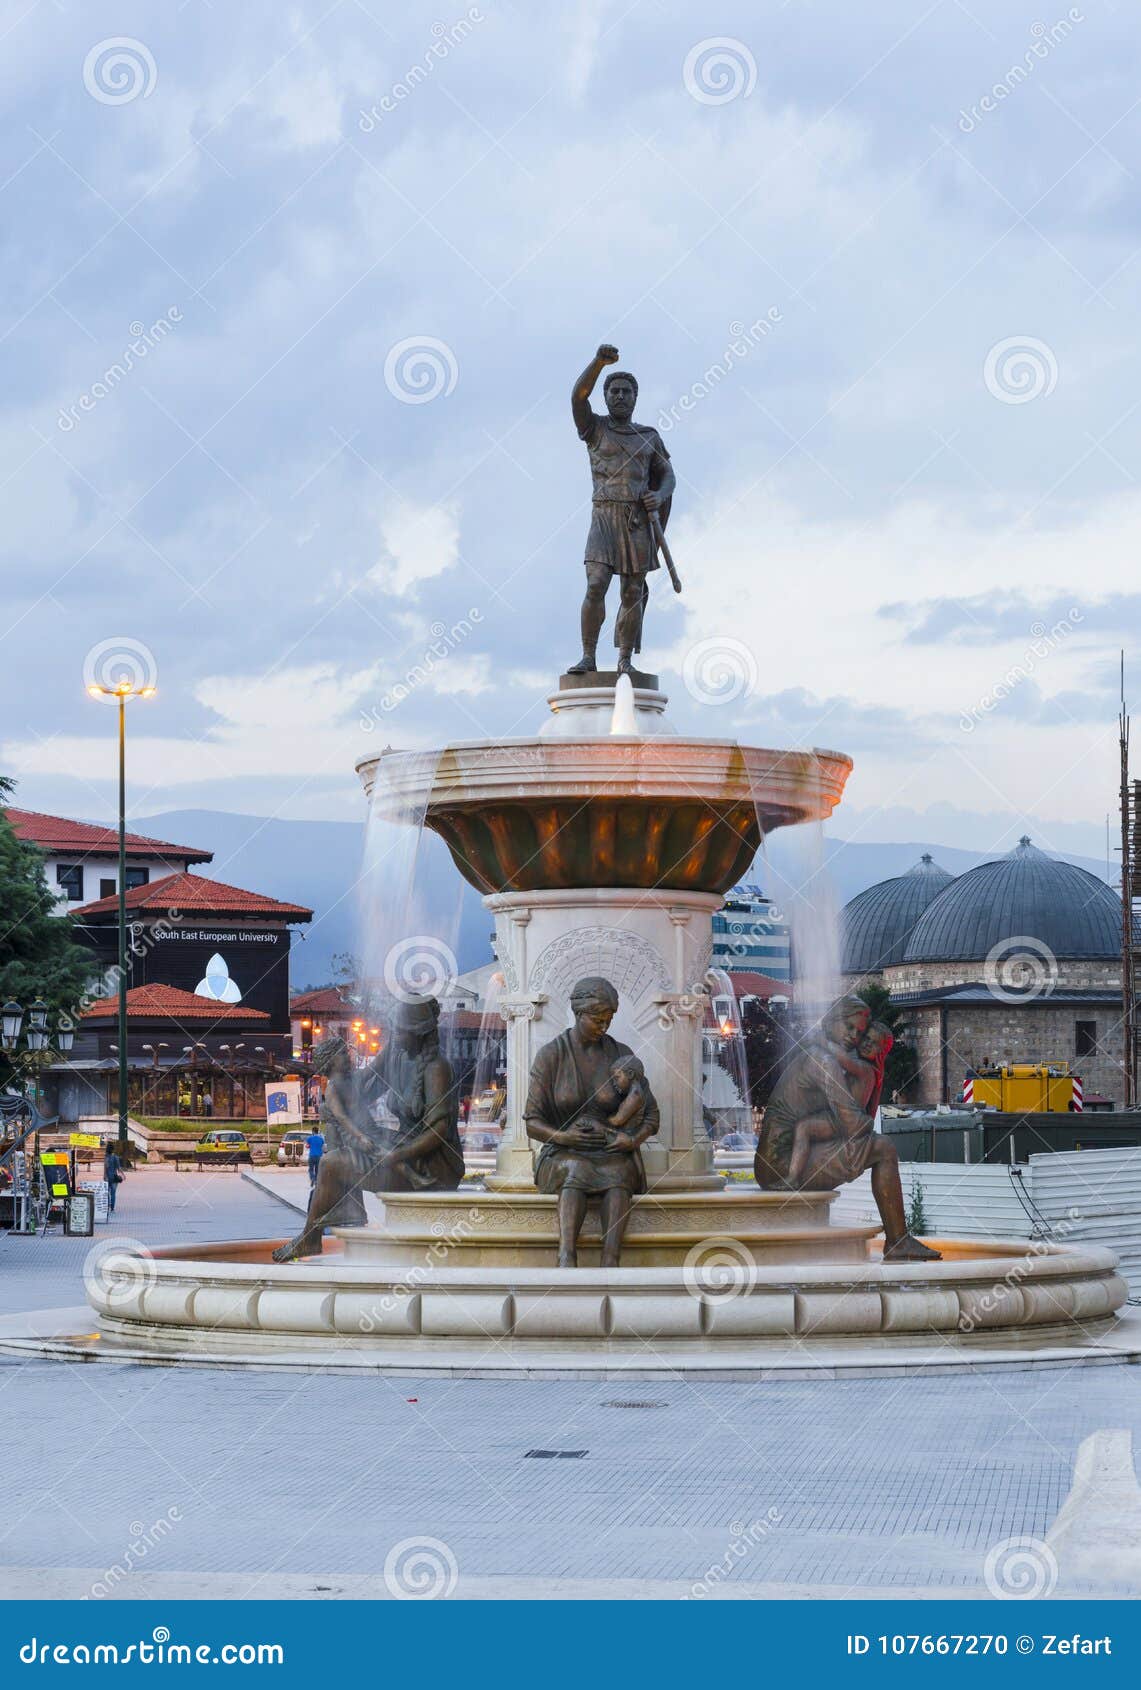 Statue Von Filip Ii Vater Von Alexander Der Grosse Monument Skopje Macedonia Redaktionelles Bild Bild Von Monument Vater